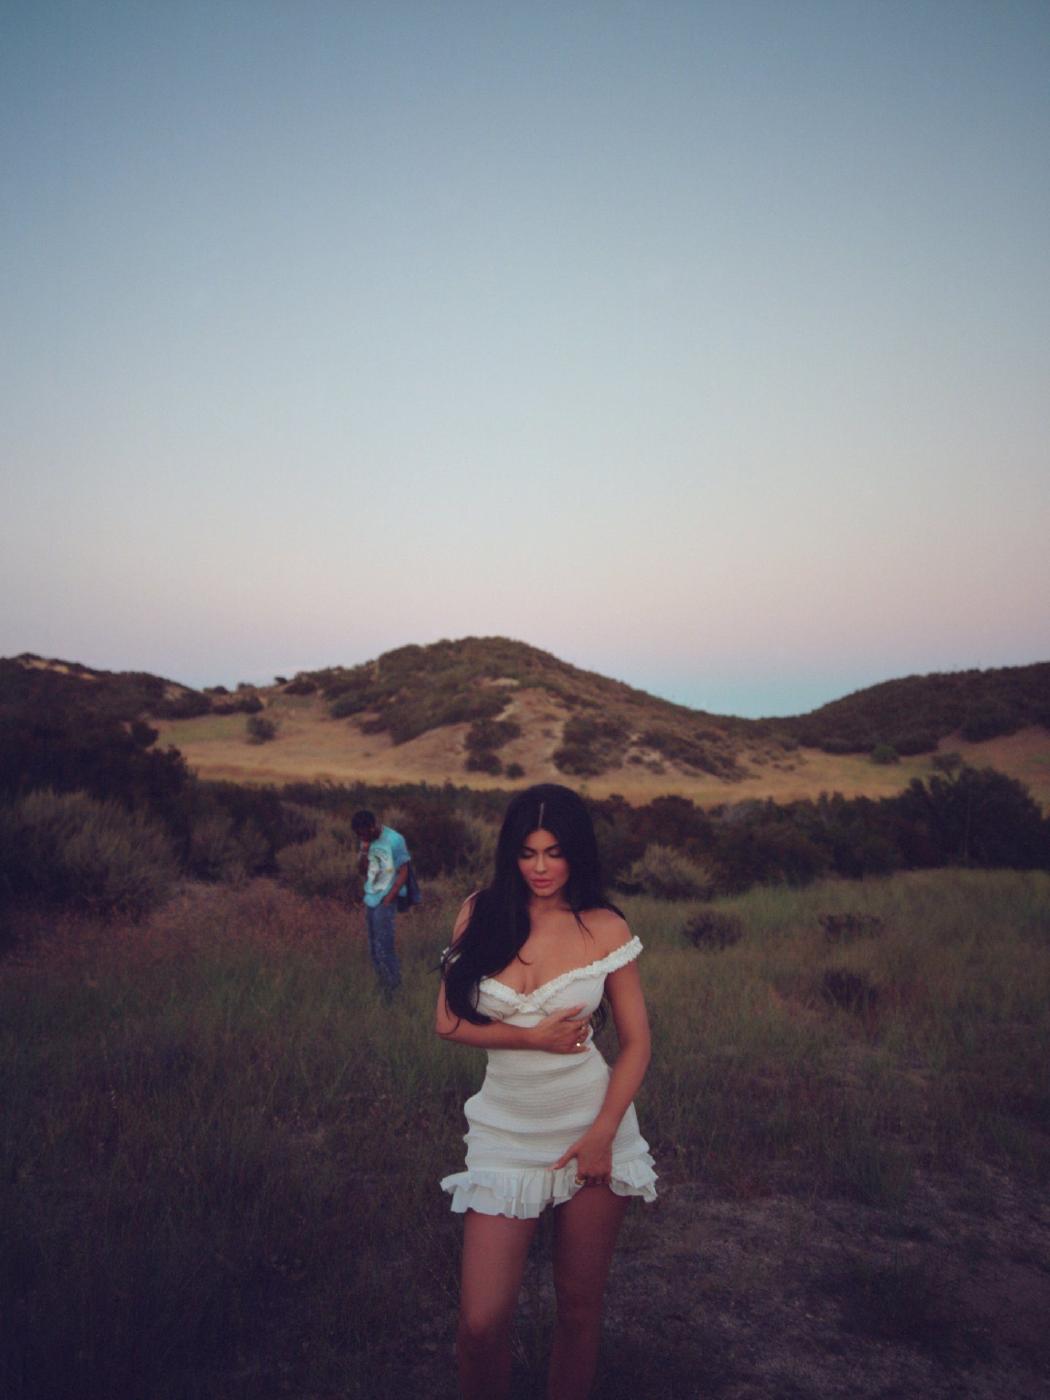 Kylie Jenner Playboy Photoshoot Leaked 7